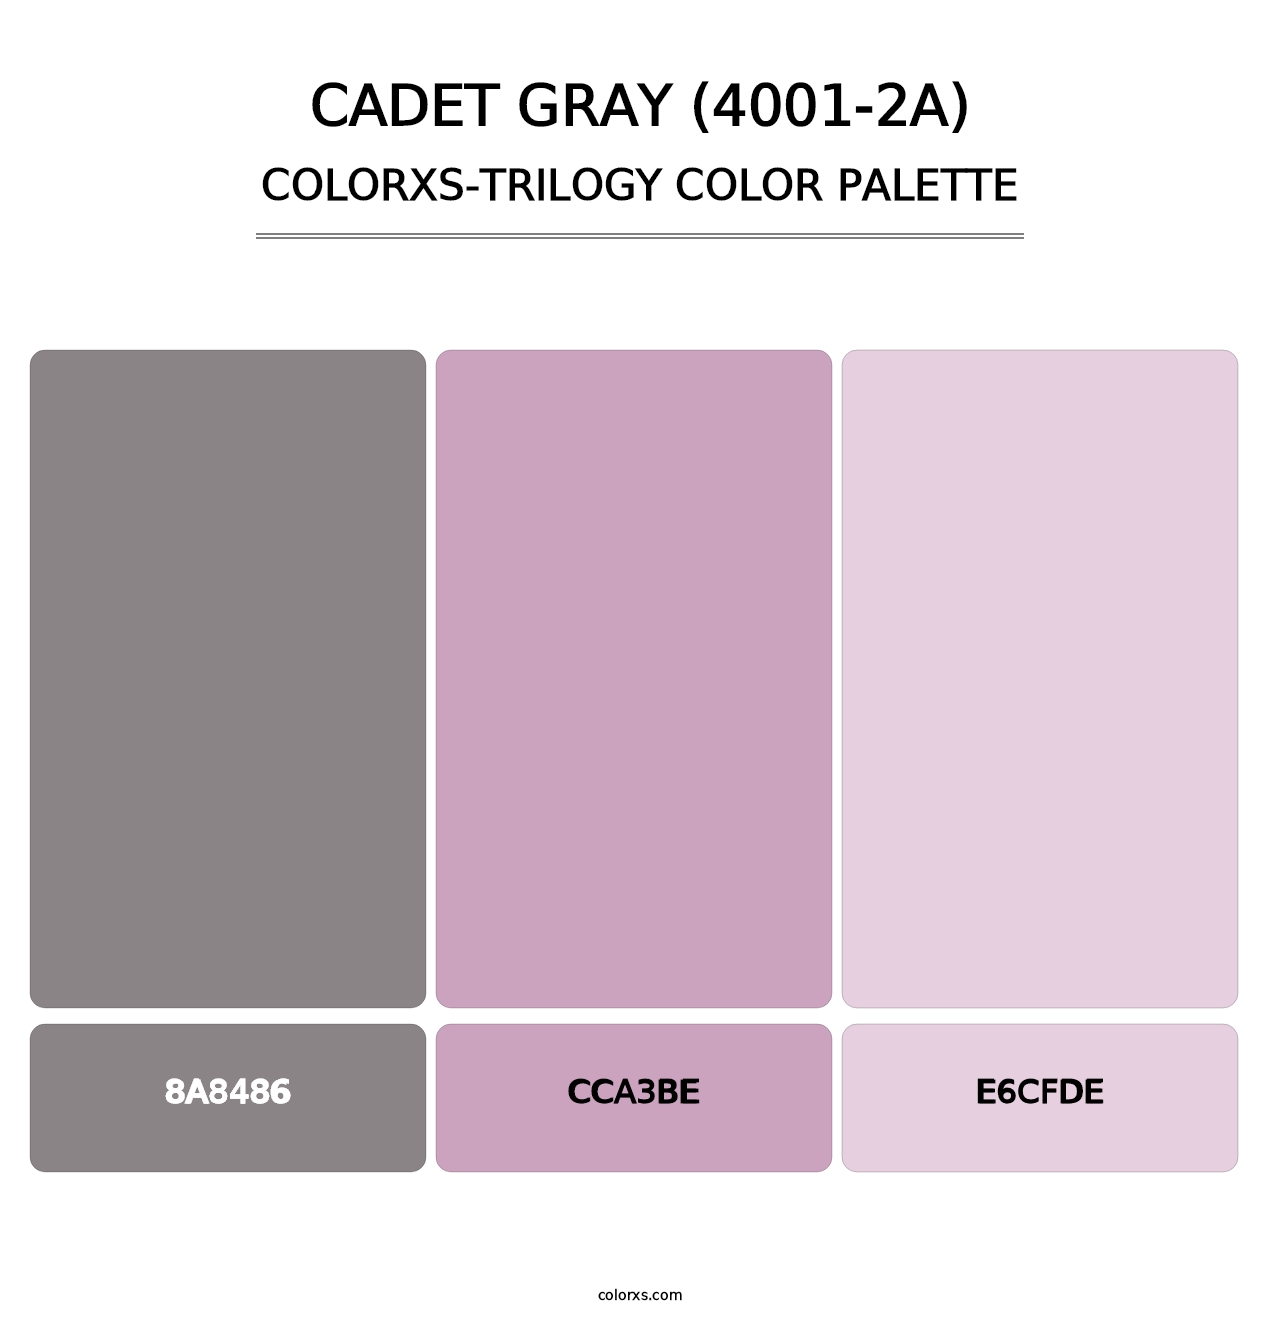 Cadet Gray (4001-2A) - Colorxs Trilogy Palette